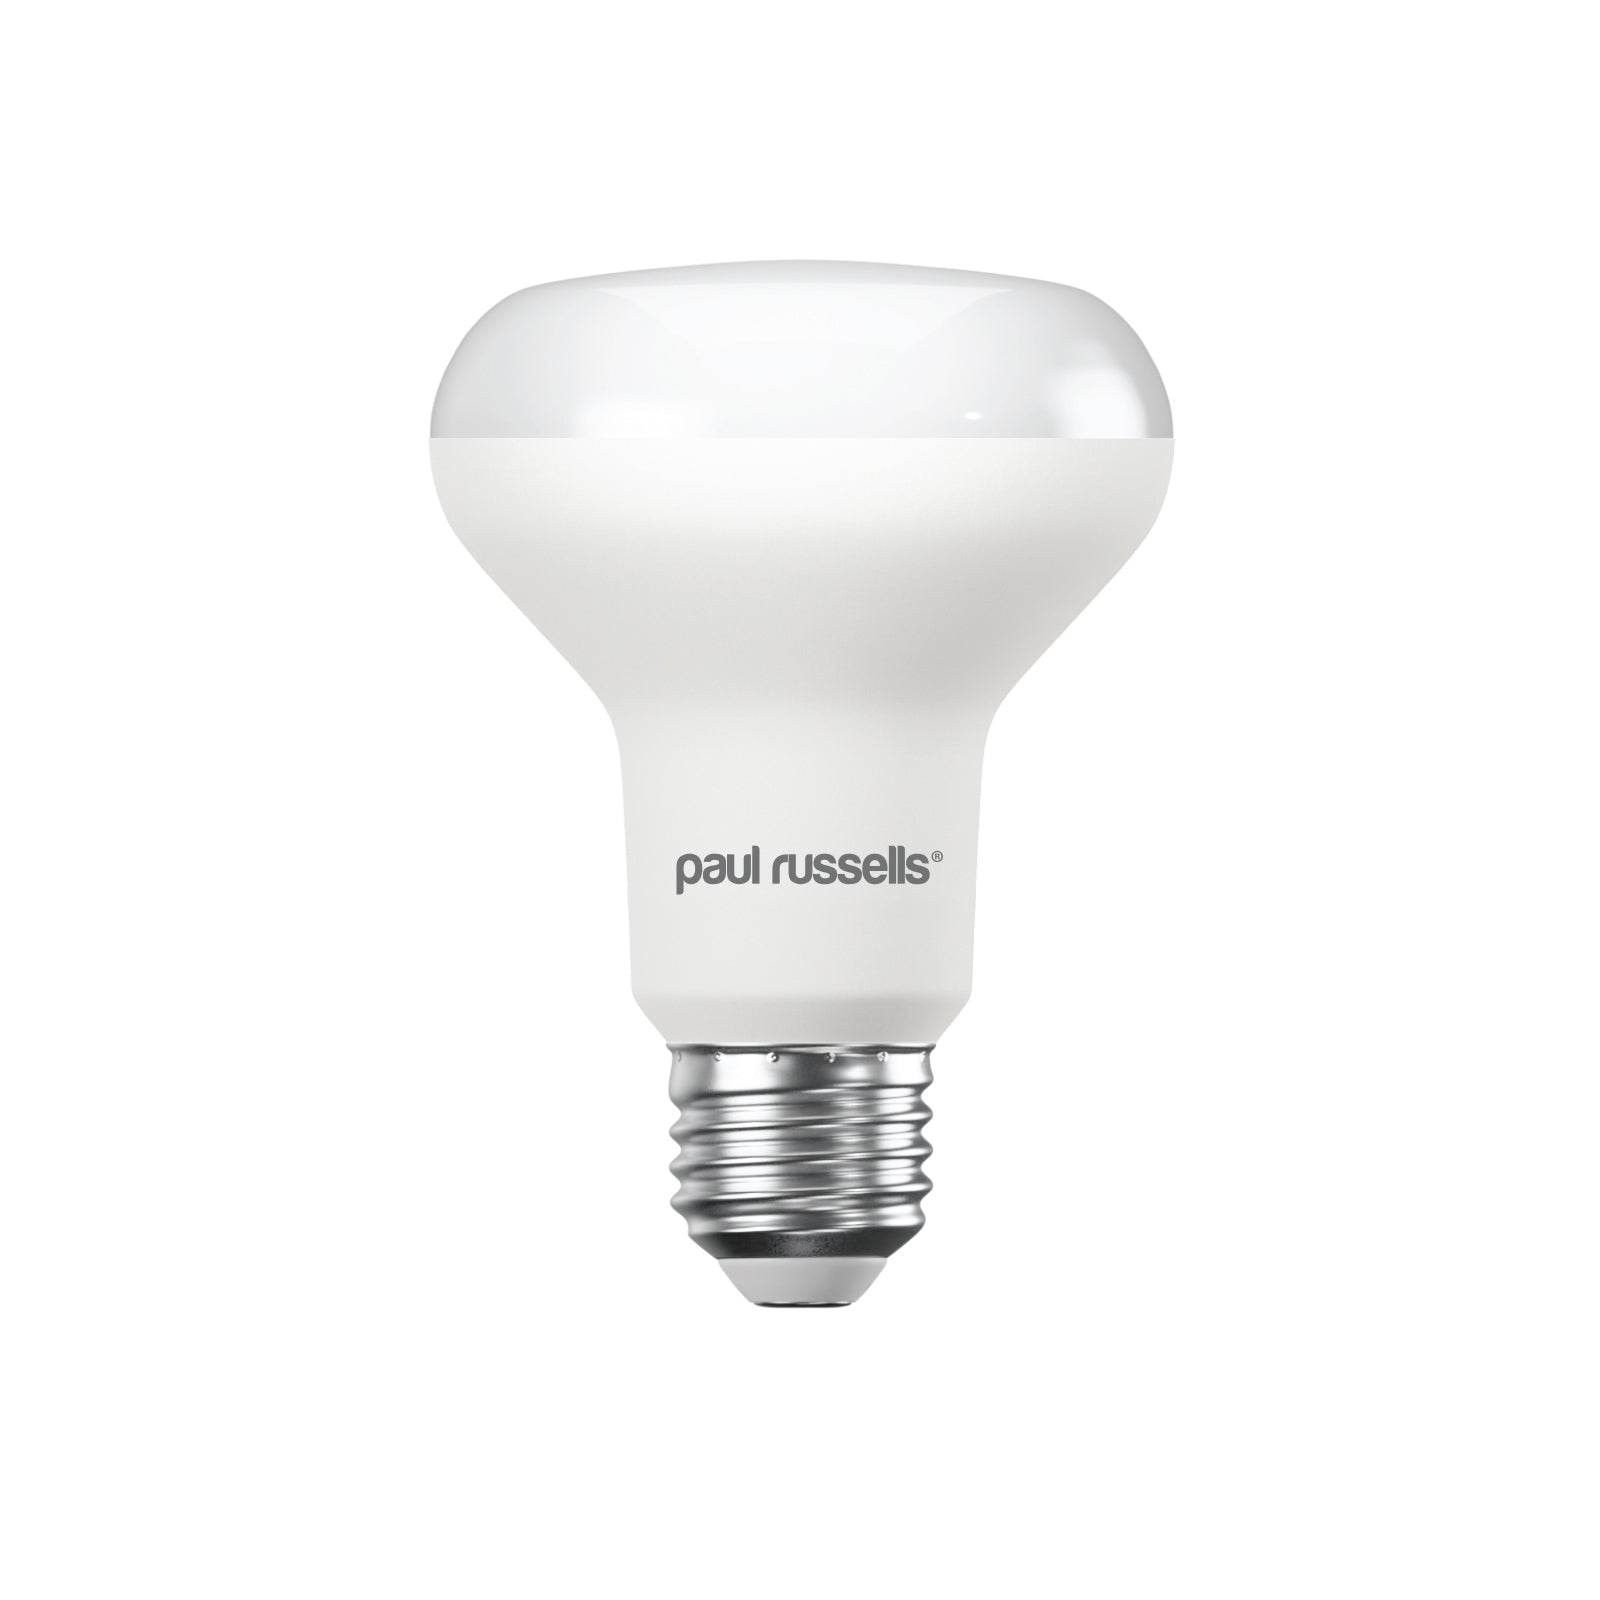 LED R80 10W (60w), ES/E27, 940 Lumens, Cool White(4000K), 240V